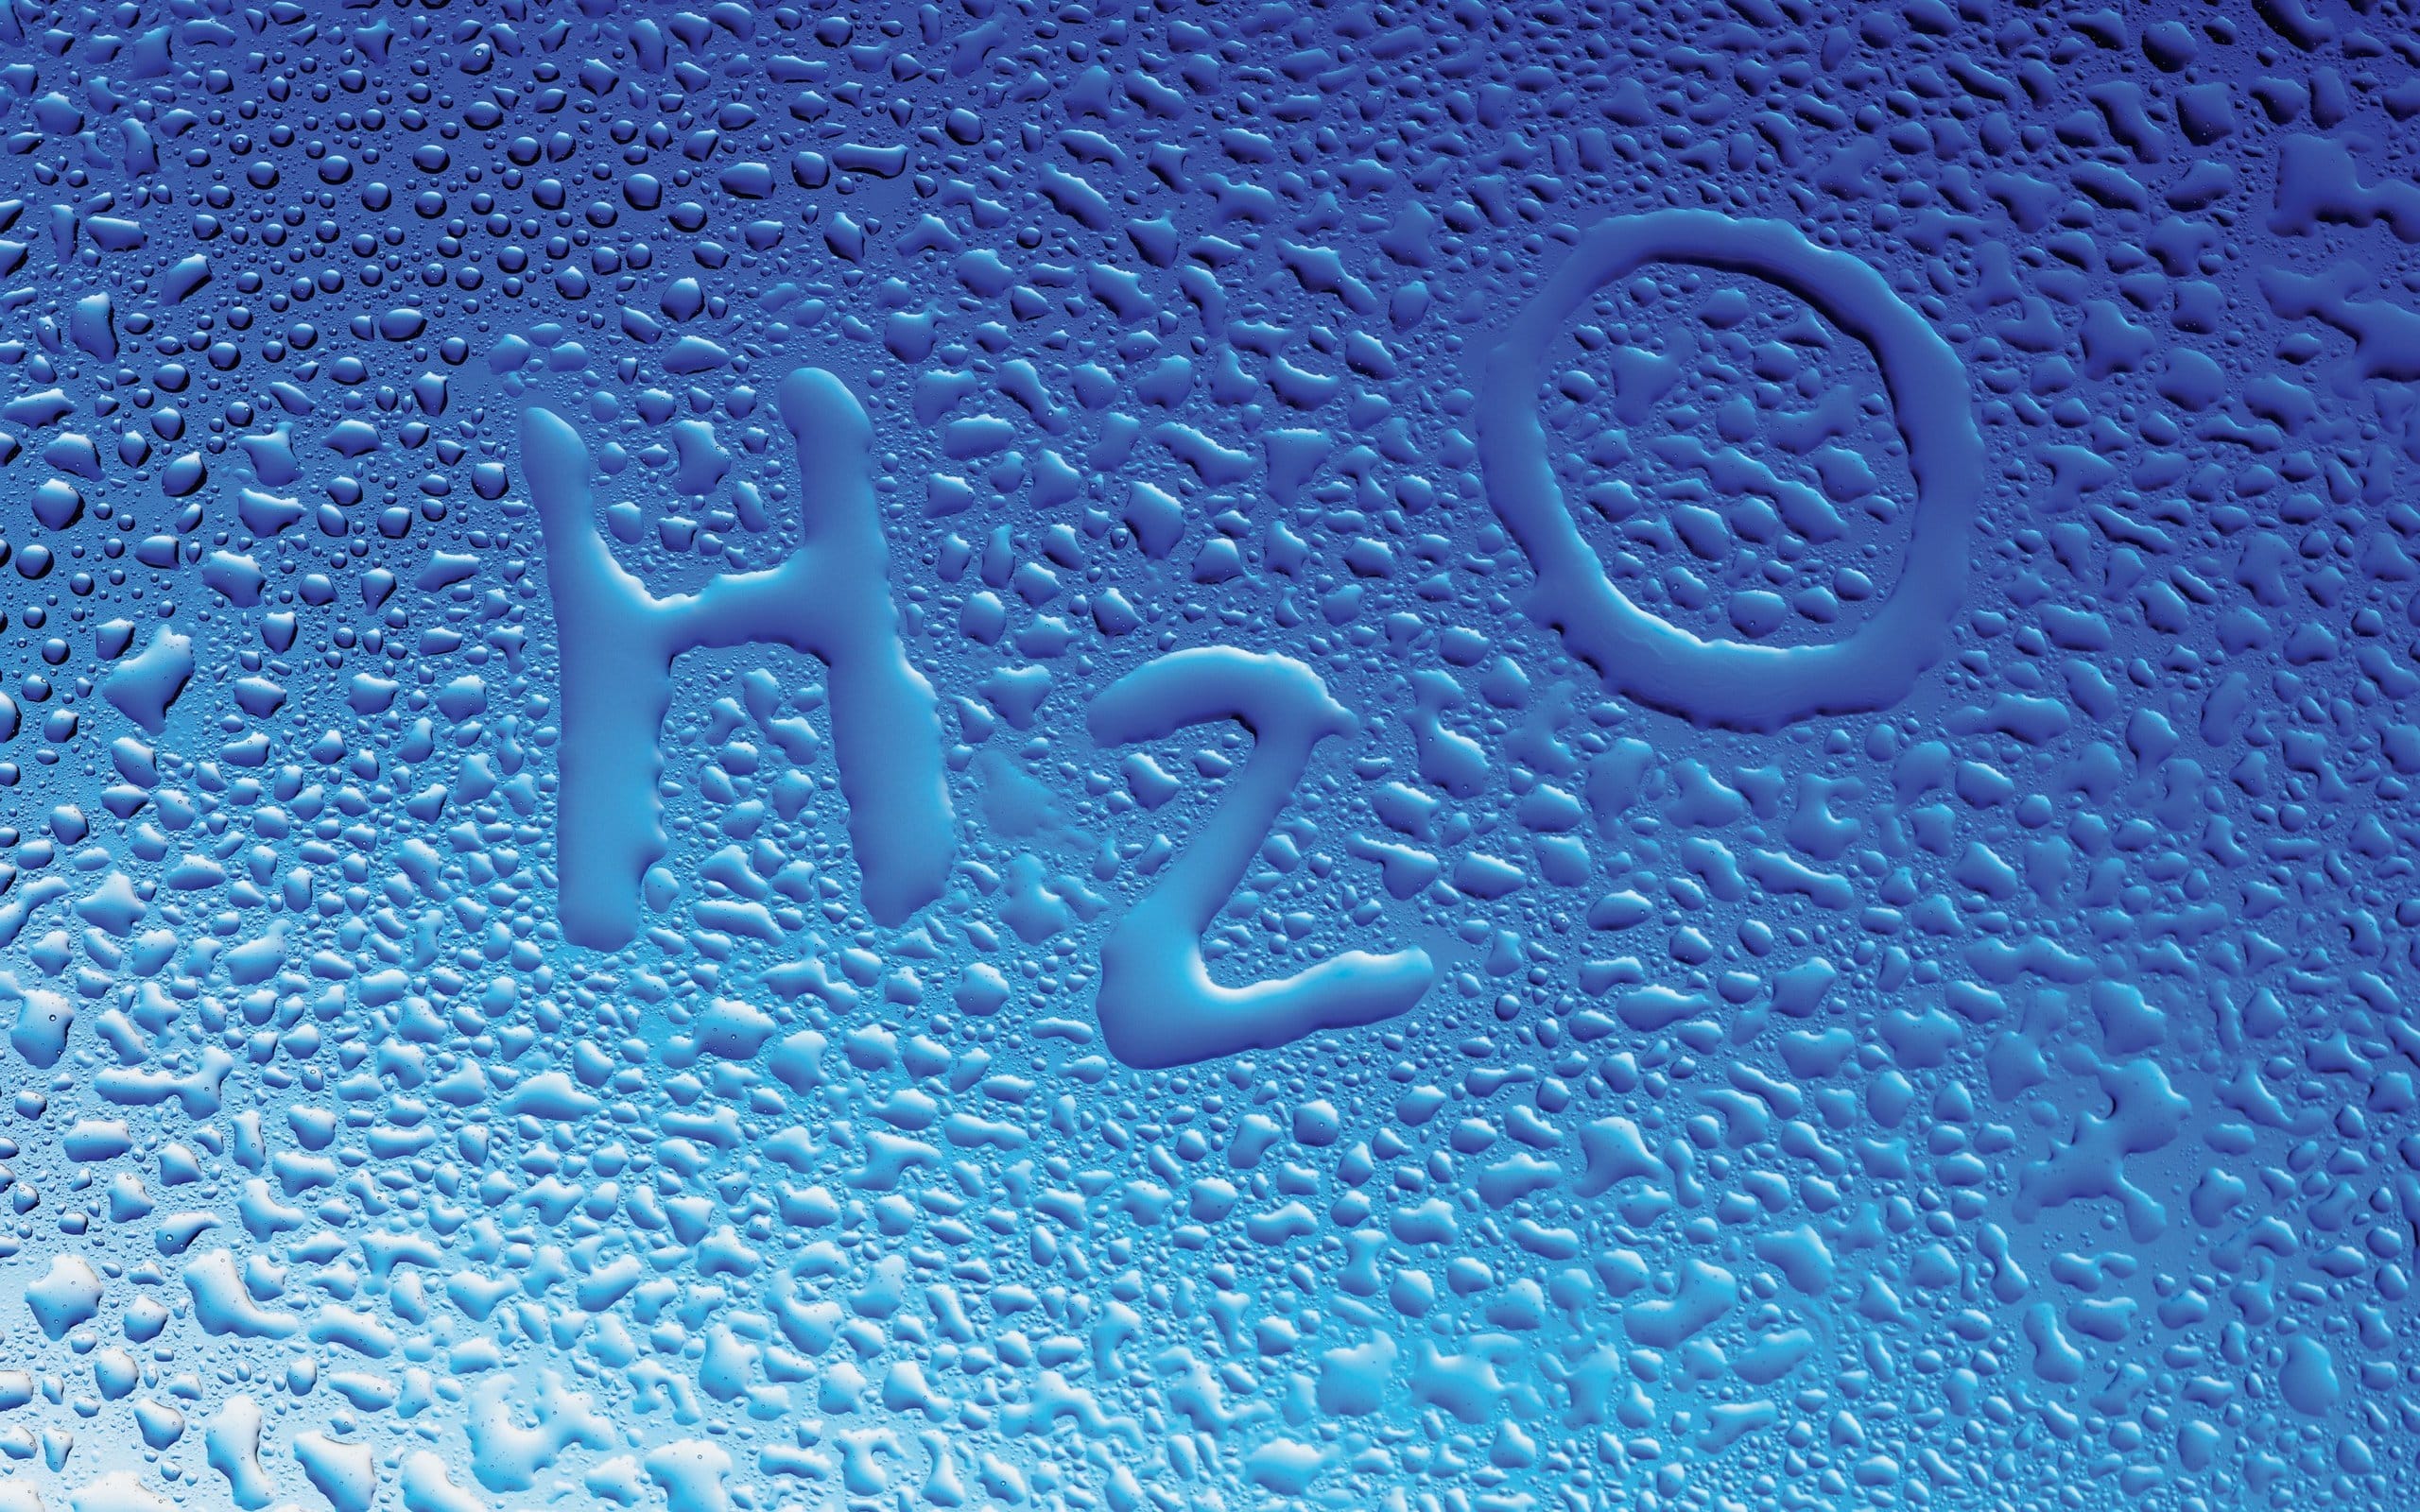 הישראלי שותה בממוצע 6.5 כוסות מים בבית ביום, לעומת 2 כוסות בממוצע של שתייה חמה